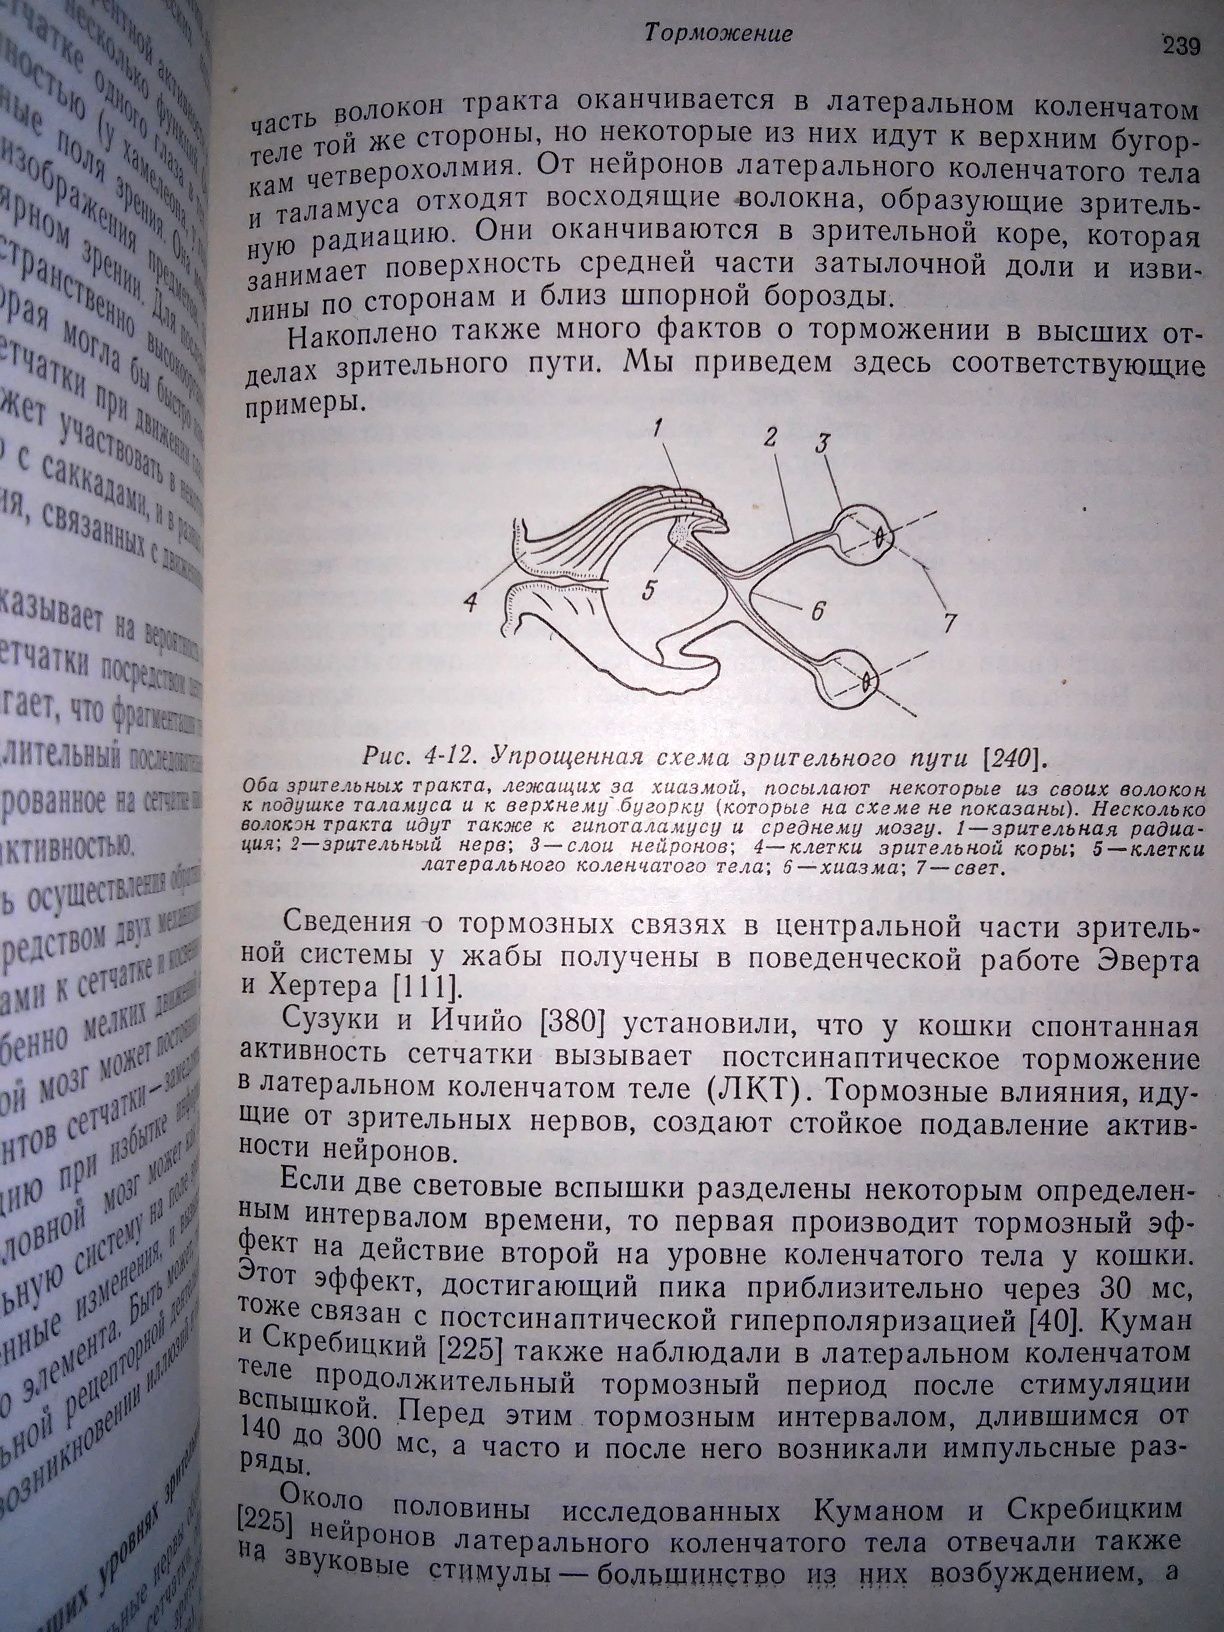 Тамар Основы сенсорной физиологии 1976